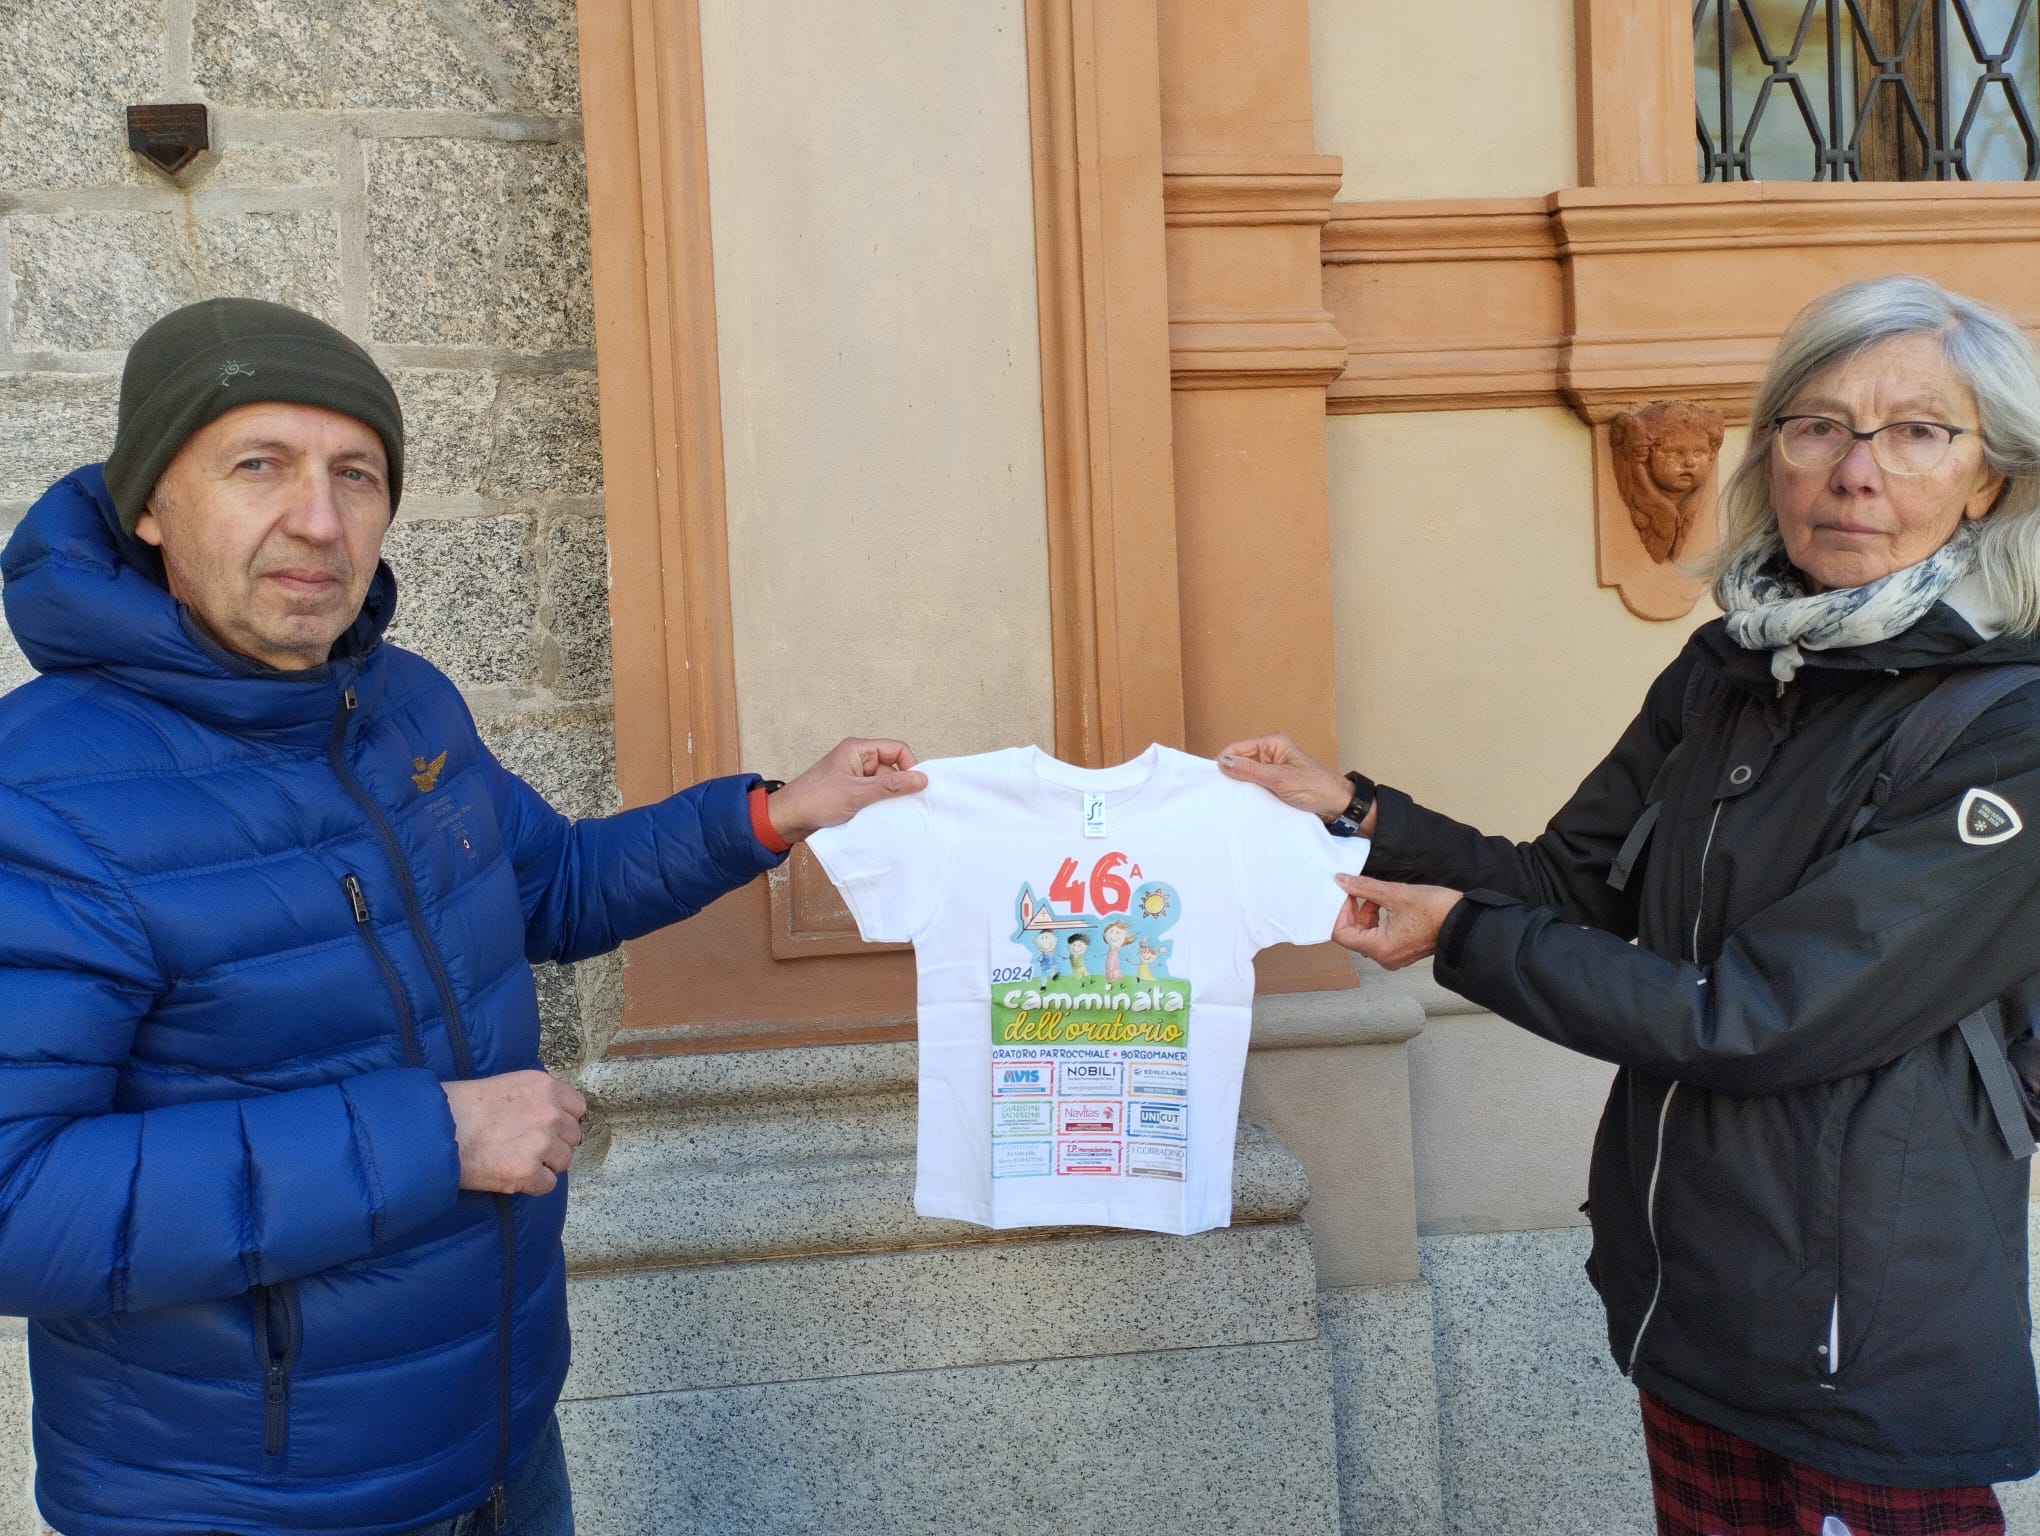 Volontari della parrocchia con la maglietta per i più piccoli "camminatori" di Borgomanero